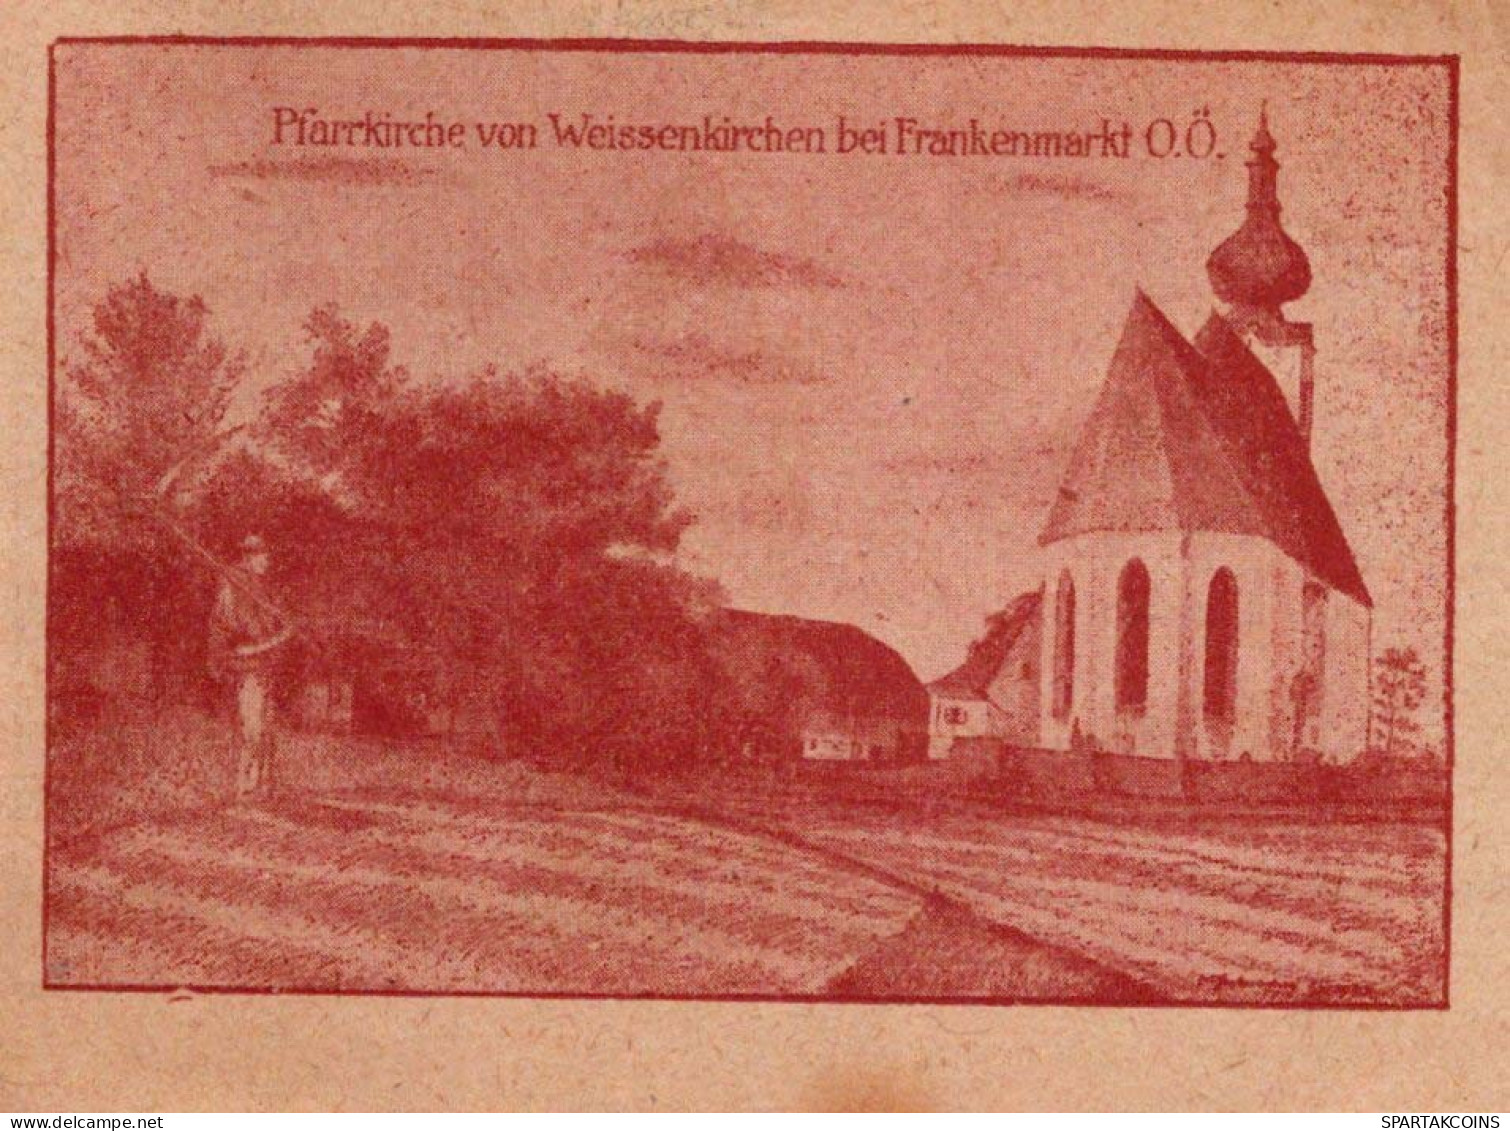 20 HELLER 1920 WEISSENKIRCHEN BEI FRANKENMARKT Oberösterreich Österreich #PF751 - [11] Local Banknote Issues